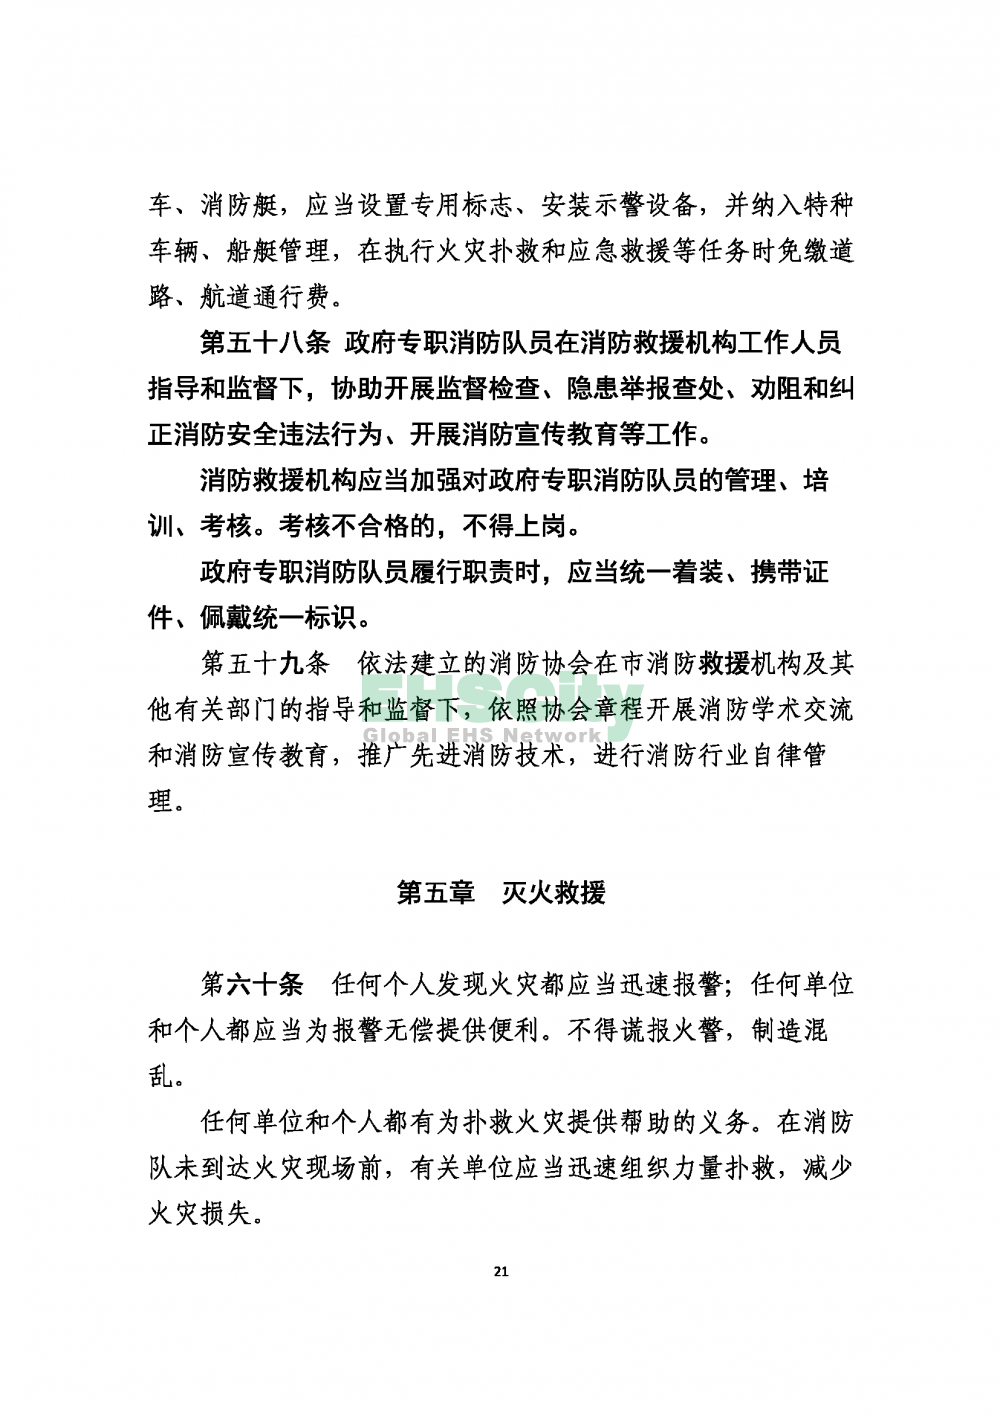 2020版上海消防条例_页面_21